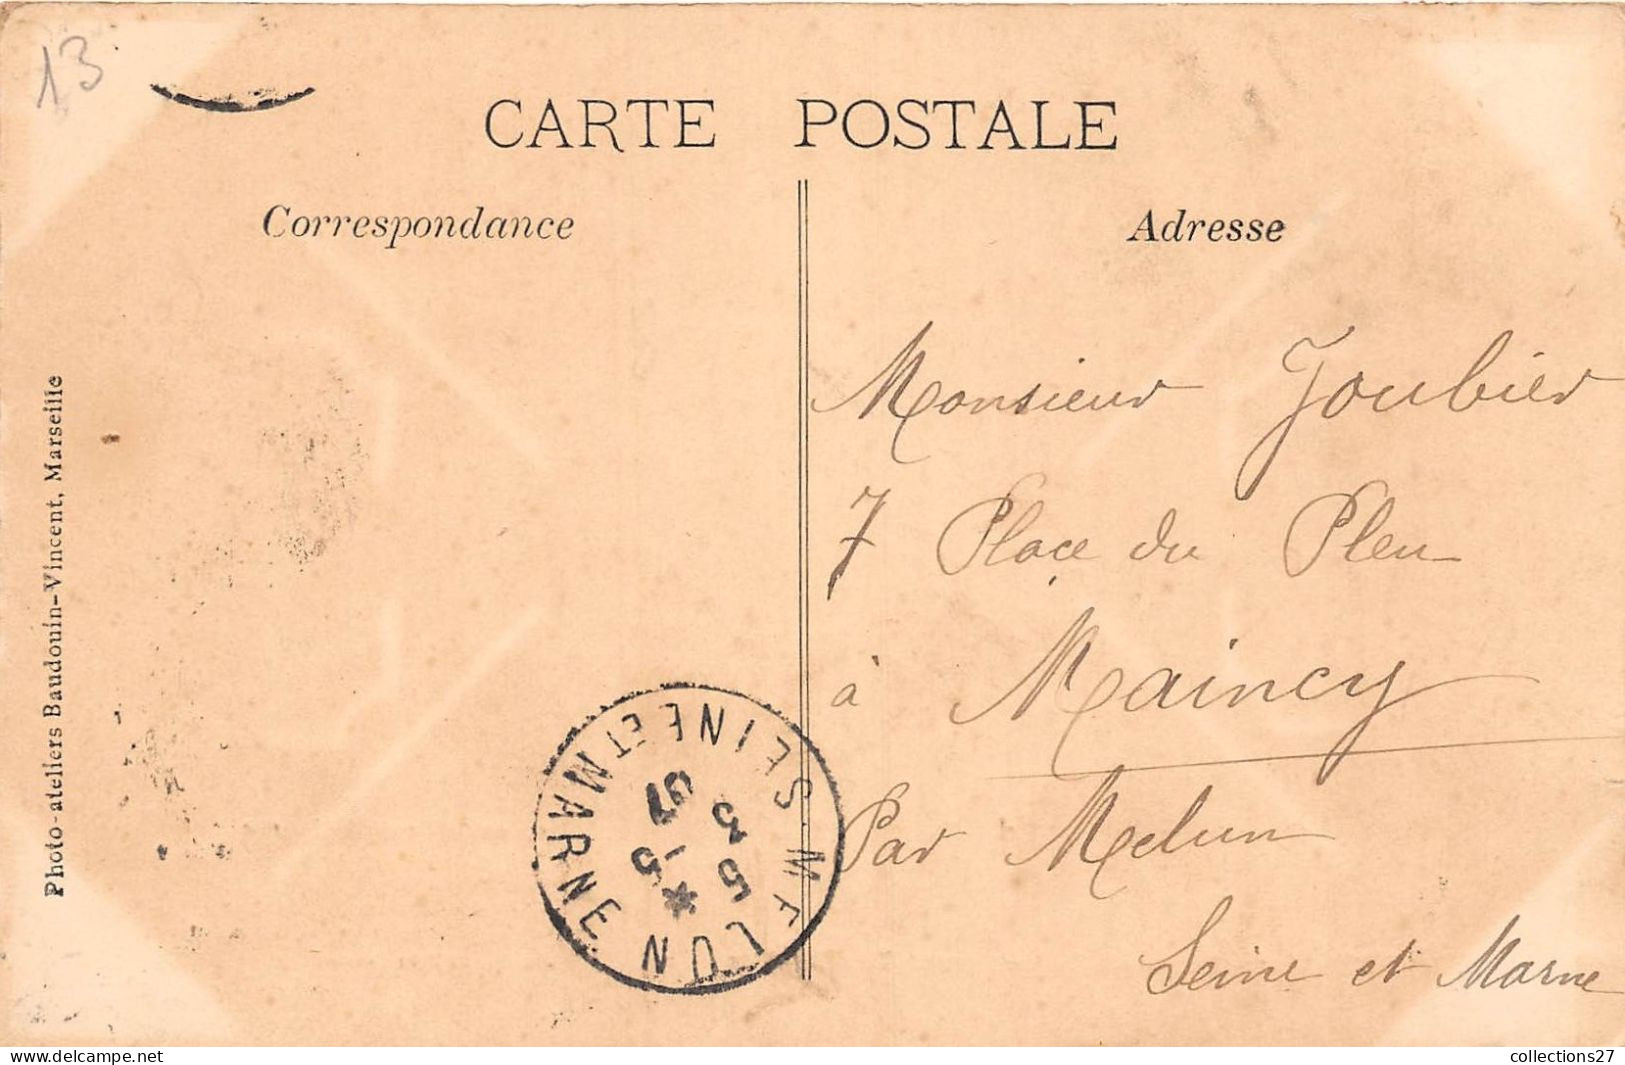 13-MARSEILLE- ENTREE DU PORT ET PONT A TRANSBORDEUR 1907 - Old Port, Saint Victor, Le Panier